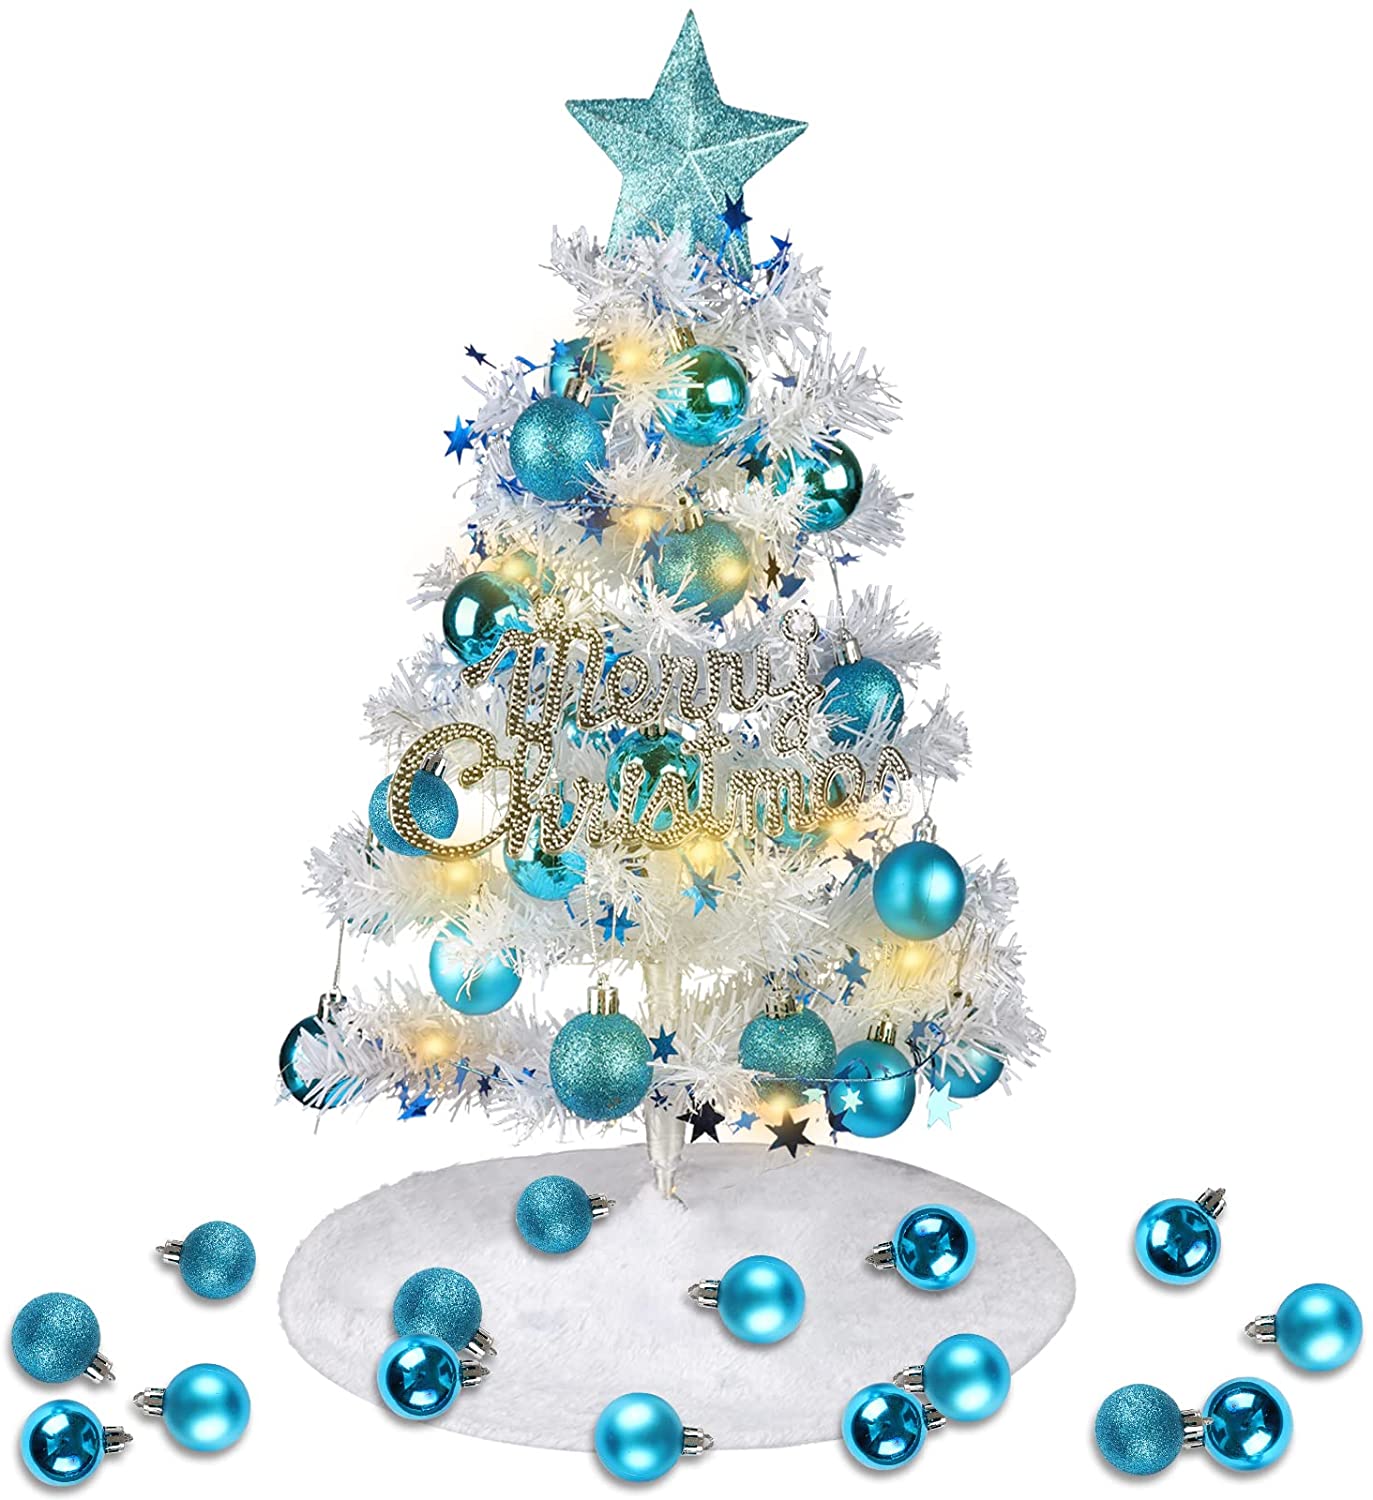 Albero di Natale alto 60 centimetri con ornamenti creativi e decorazioni colorate